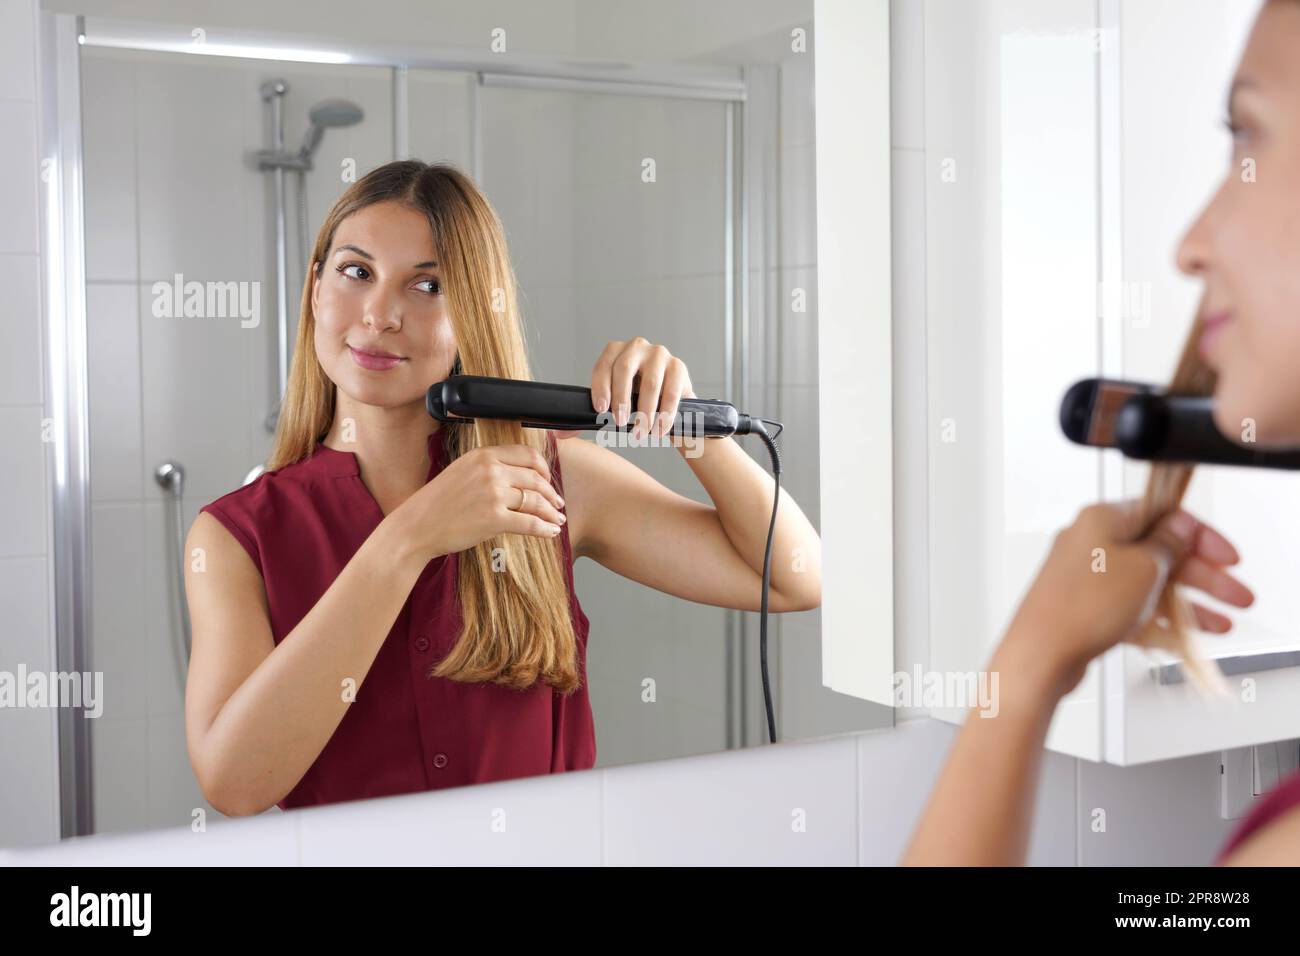 Gros plan de la jeune femme latin utilisant un lisseur vapeur pour coiffer les cheveux dans le miroir de la salle de bains Banque D'Images